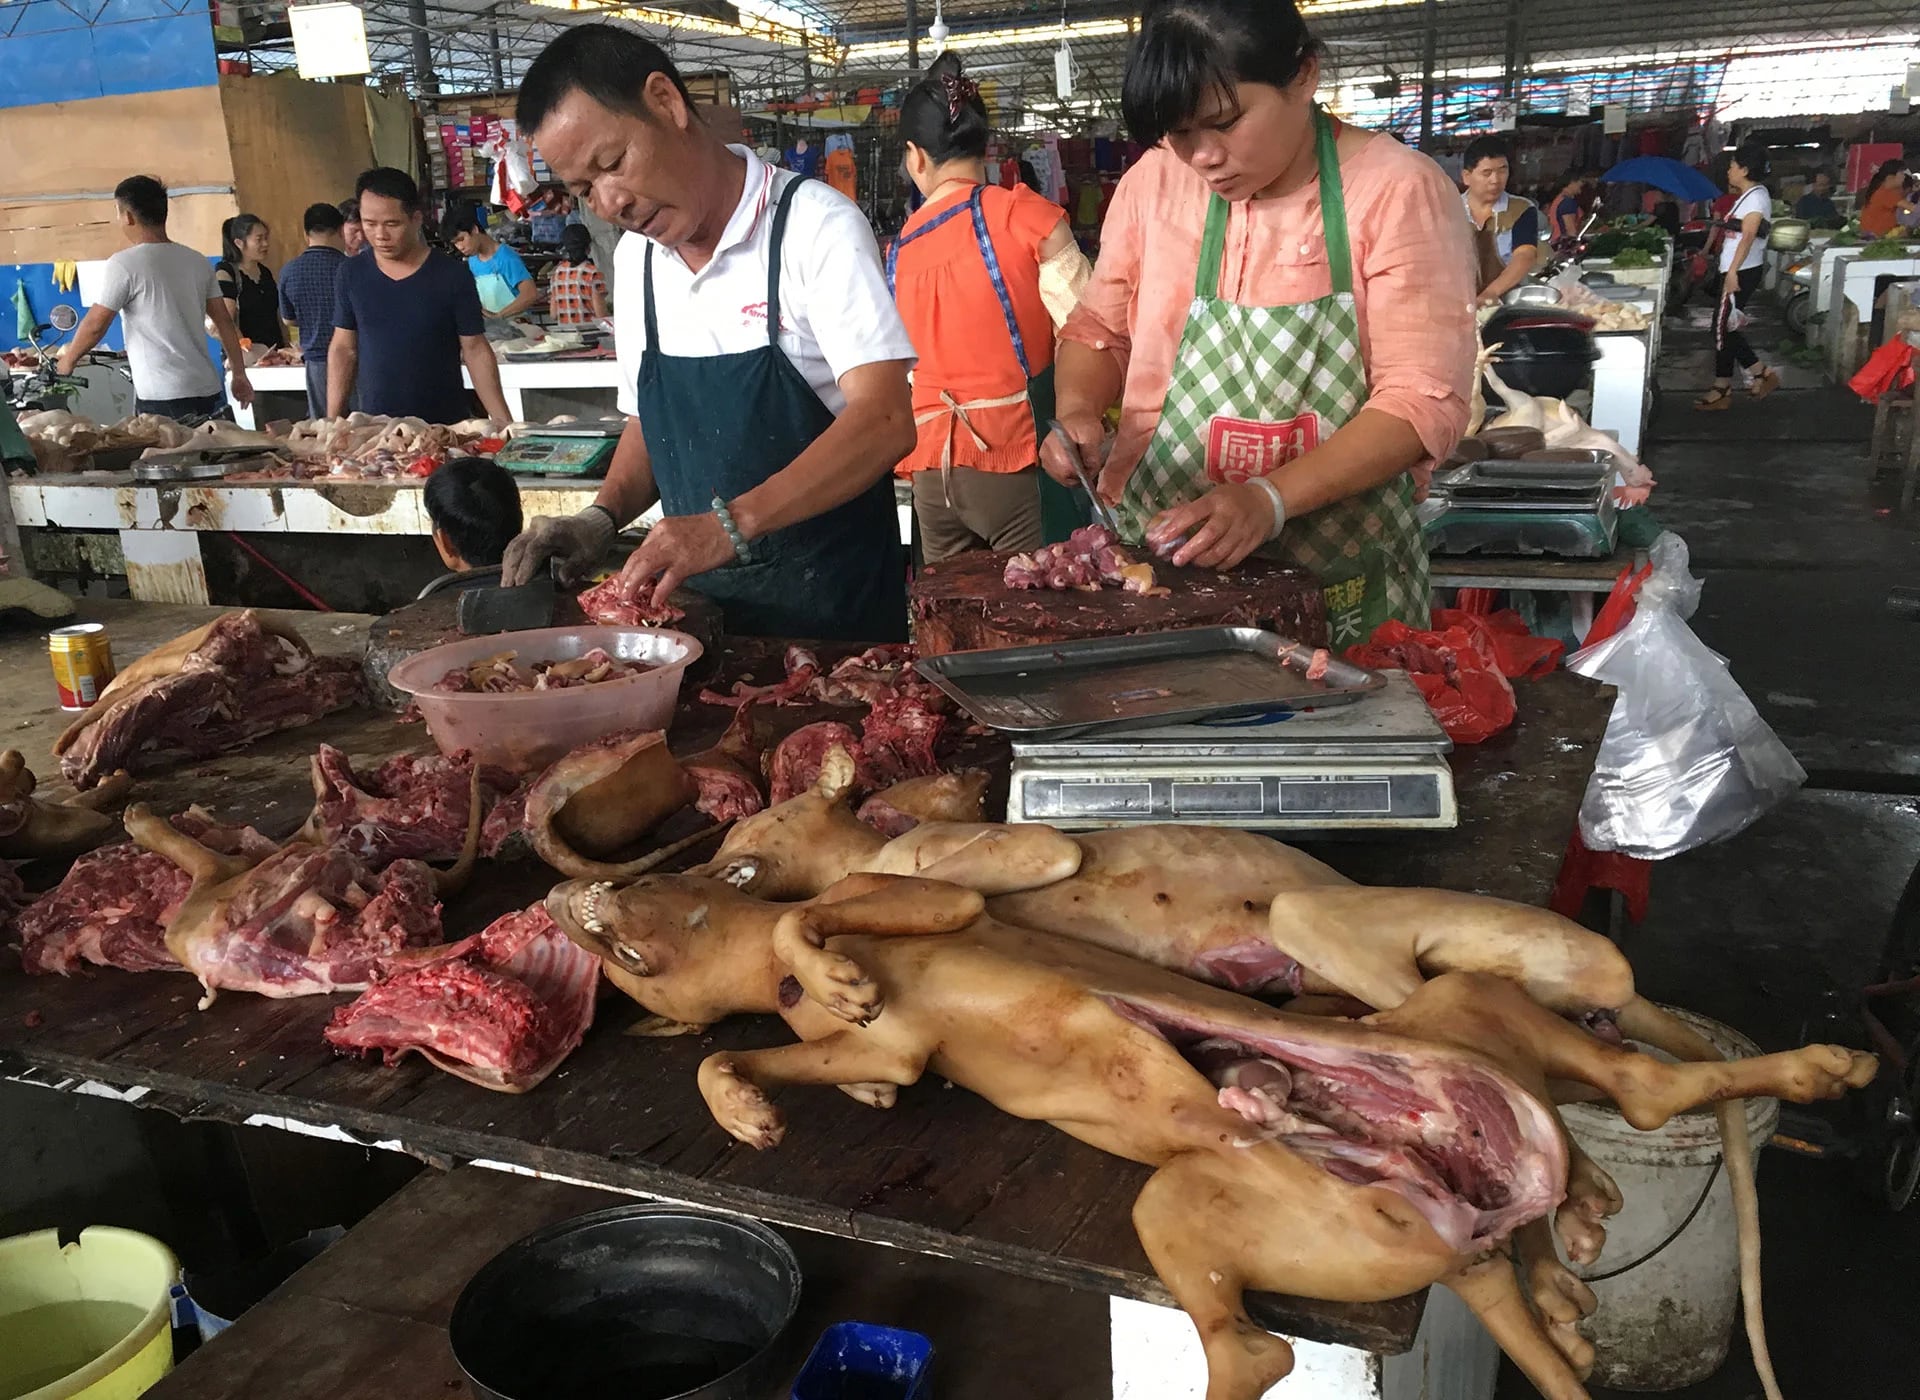 El festival de Yulin no es una tradición arraigada en la sociedad china, sino que fue creado en 2010 por los propios vendedores de carne de perro para incrementar sus ventas